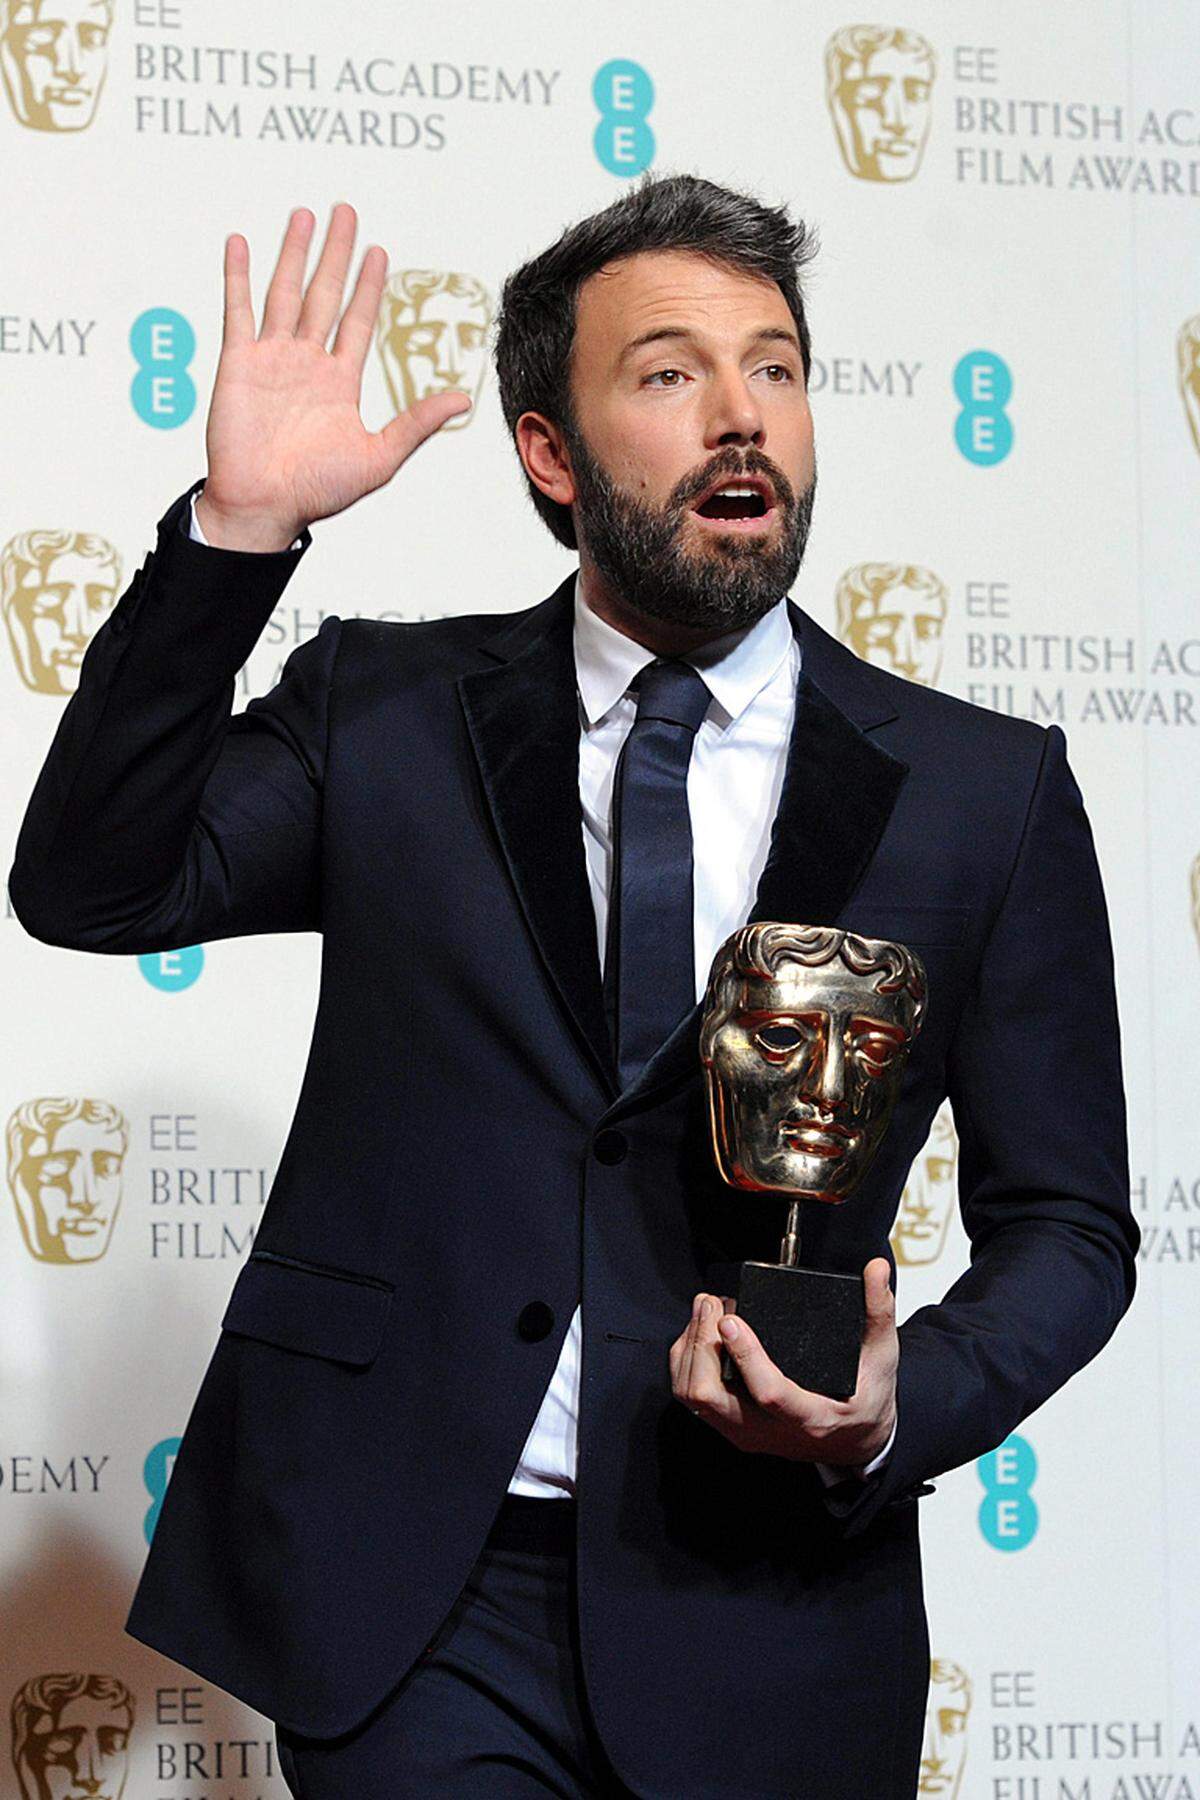 Affleck mausert sich mit "Argo", das auch für den besten Schnitt ausgezeichnet wurde, zum Favoriten auf den Oscar. Der Schauspieler holte überdies den Preis für den besten Regisseur - in dieser Kategorie war Affleck bei den Oscar-Nominierungen übergangen worden.